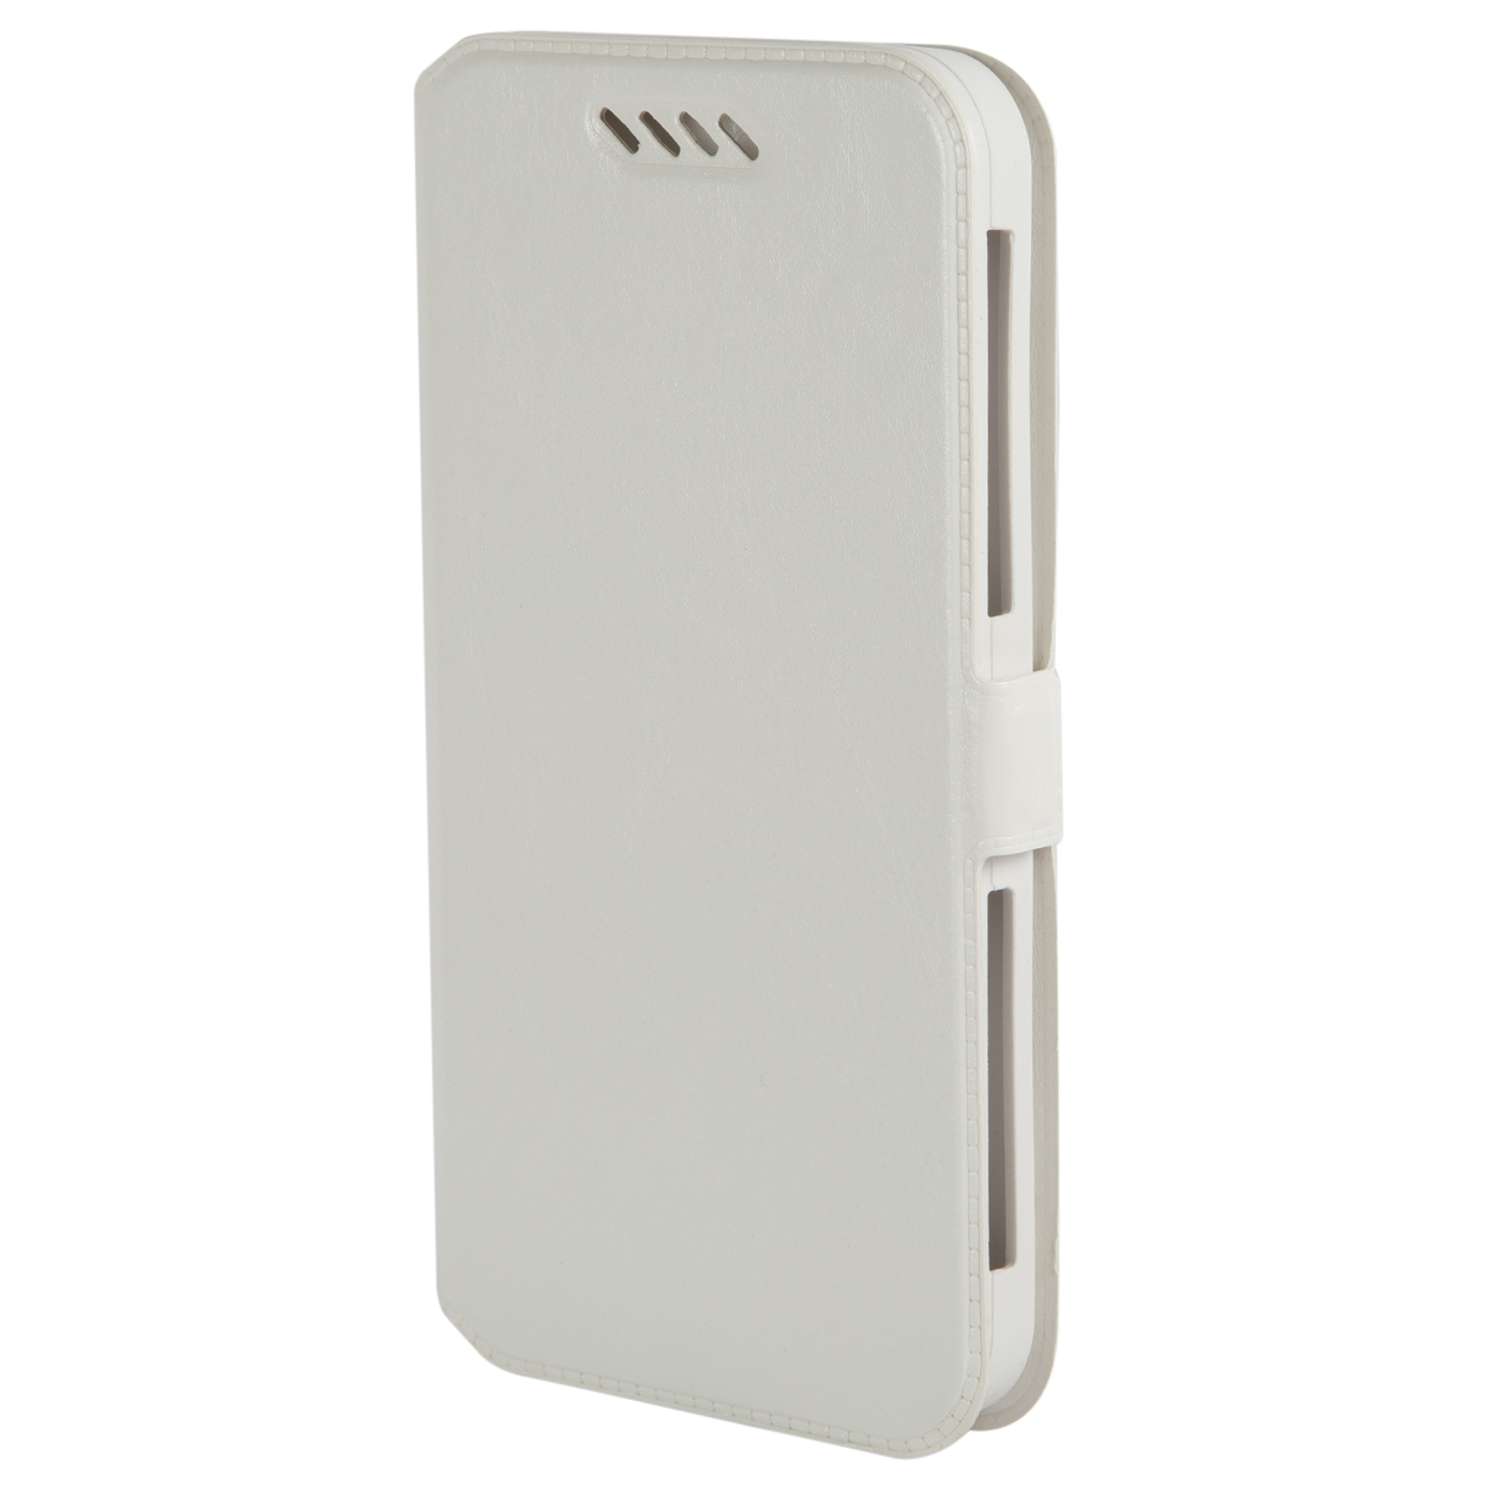 Чехол универсальный iBox Universal Slide для телефонов 5-6 дюймов белый - фото 1